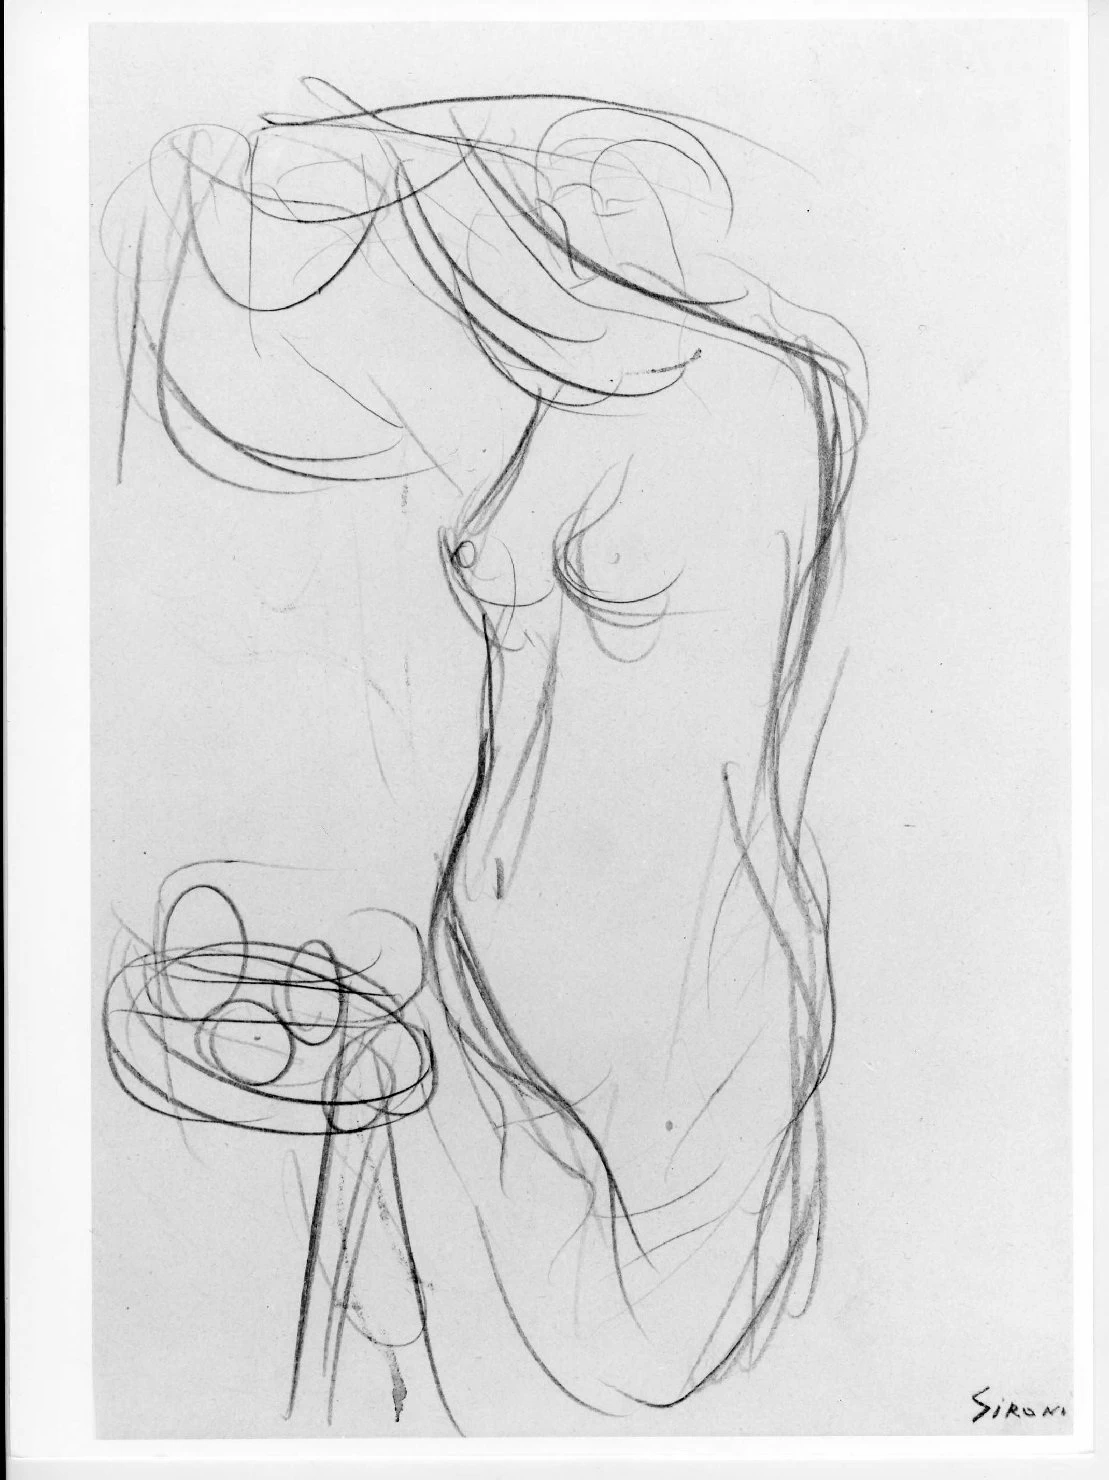  64-figura femminile nuda -Museo di Castevecchio-Verona 